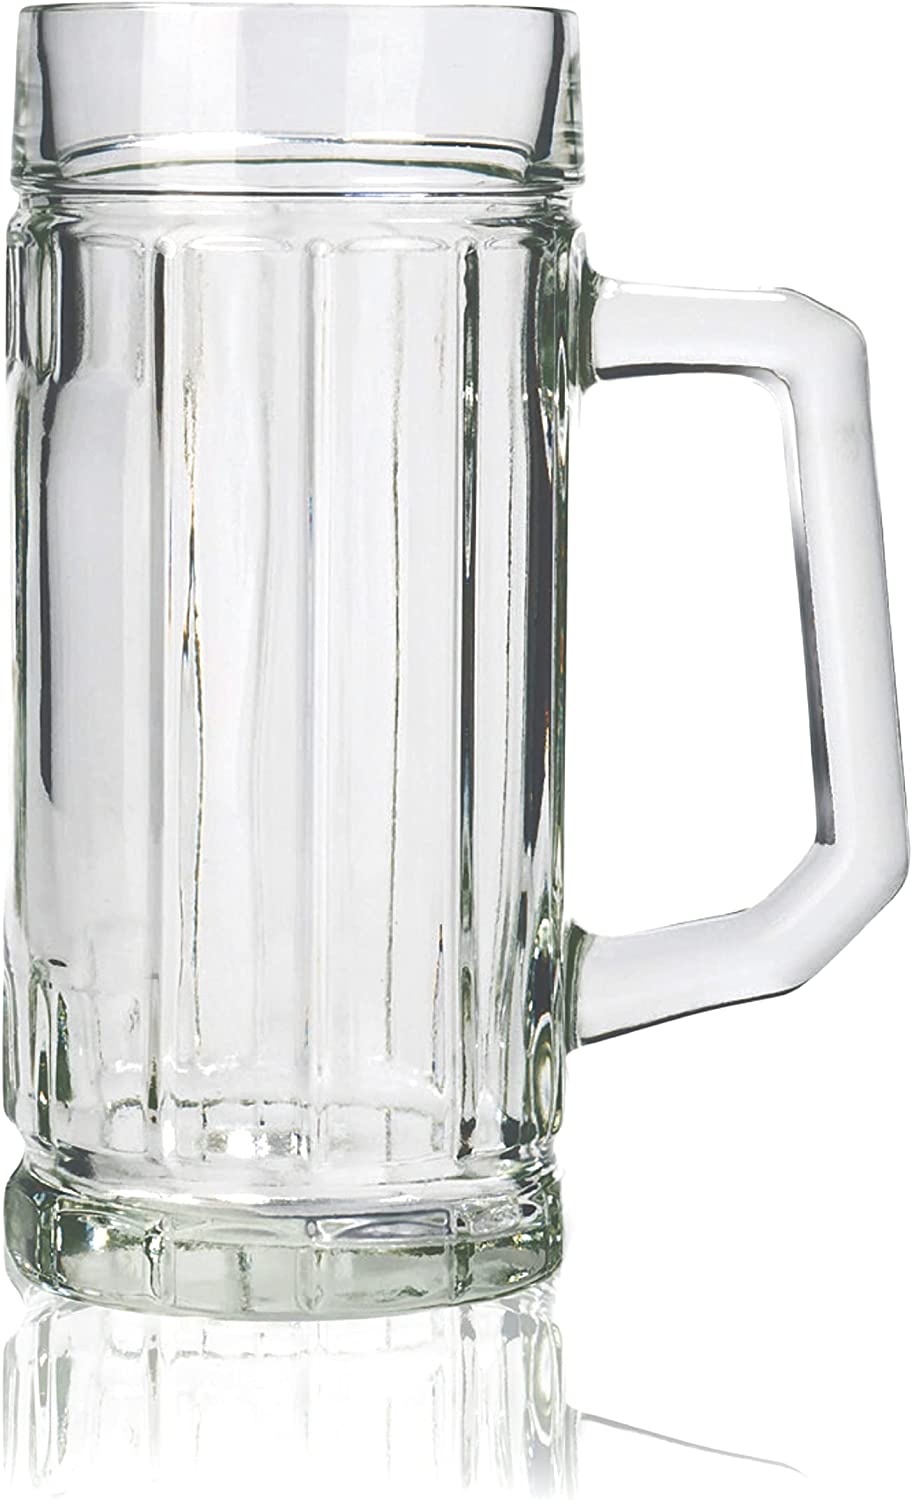 Stölzle Oberglas Gambrinus Beer Mugs / Set of 12 Beer Mugs 0.125 Litres / Sturdy Beer Jug / Beer Glasses 0.125 Litres Made of Soda Lime Glass / Dishwasher Safe